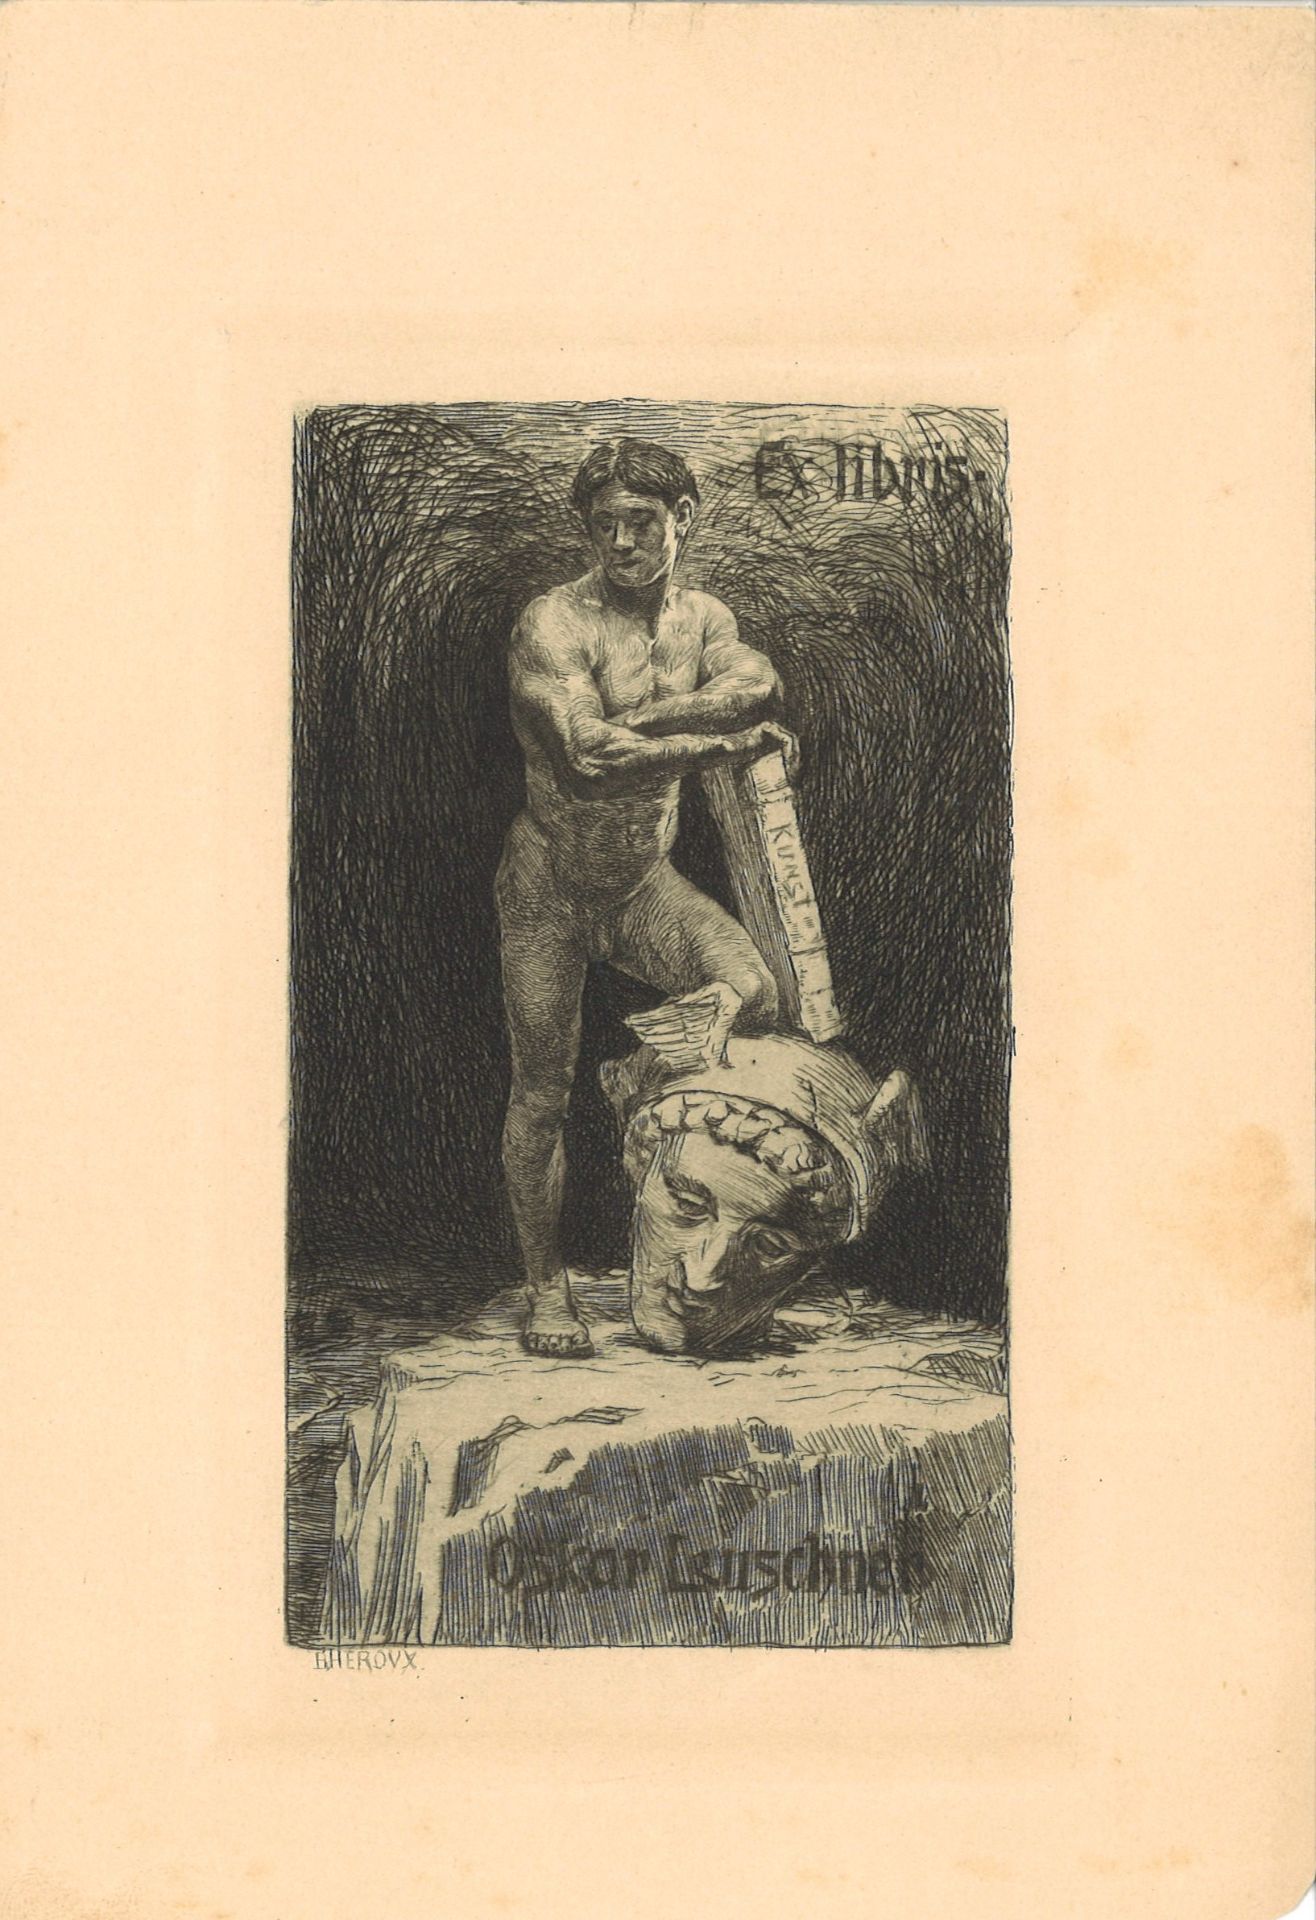 Exlibris Oskar Leuschner "Jüngling der Kunst'" von B. Herovx. Blattgröße: Höhe ca. 20 cm, Breite ca.